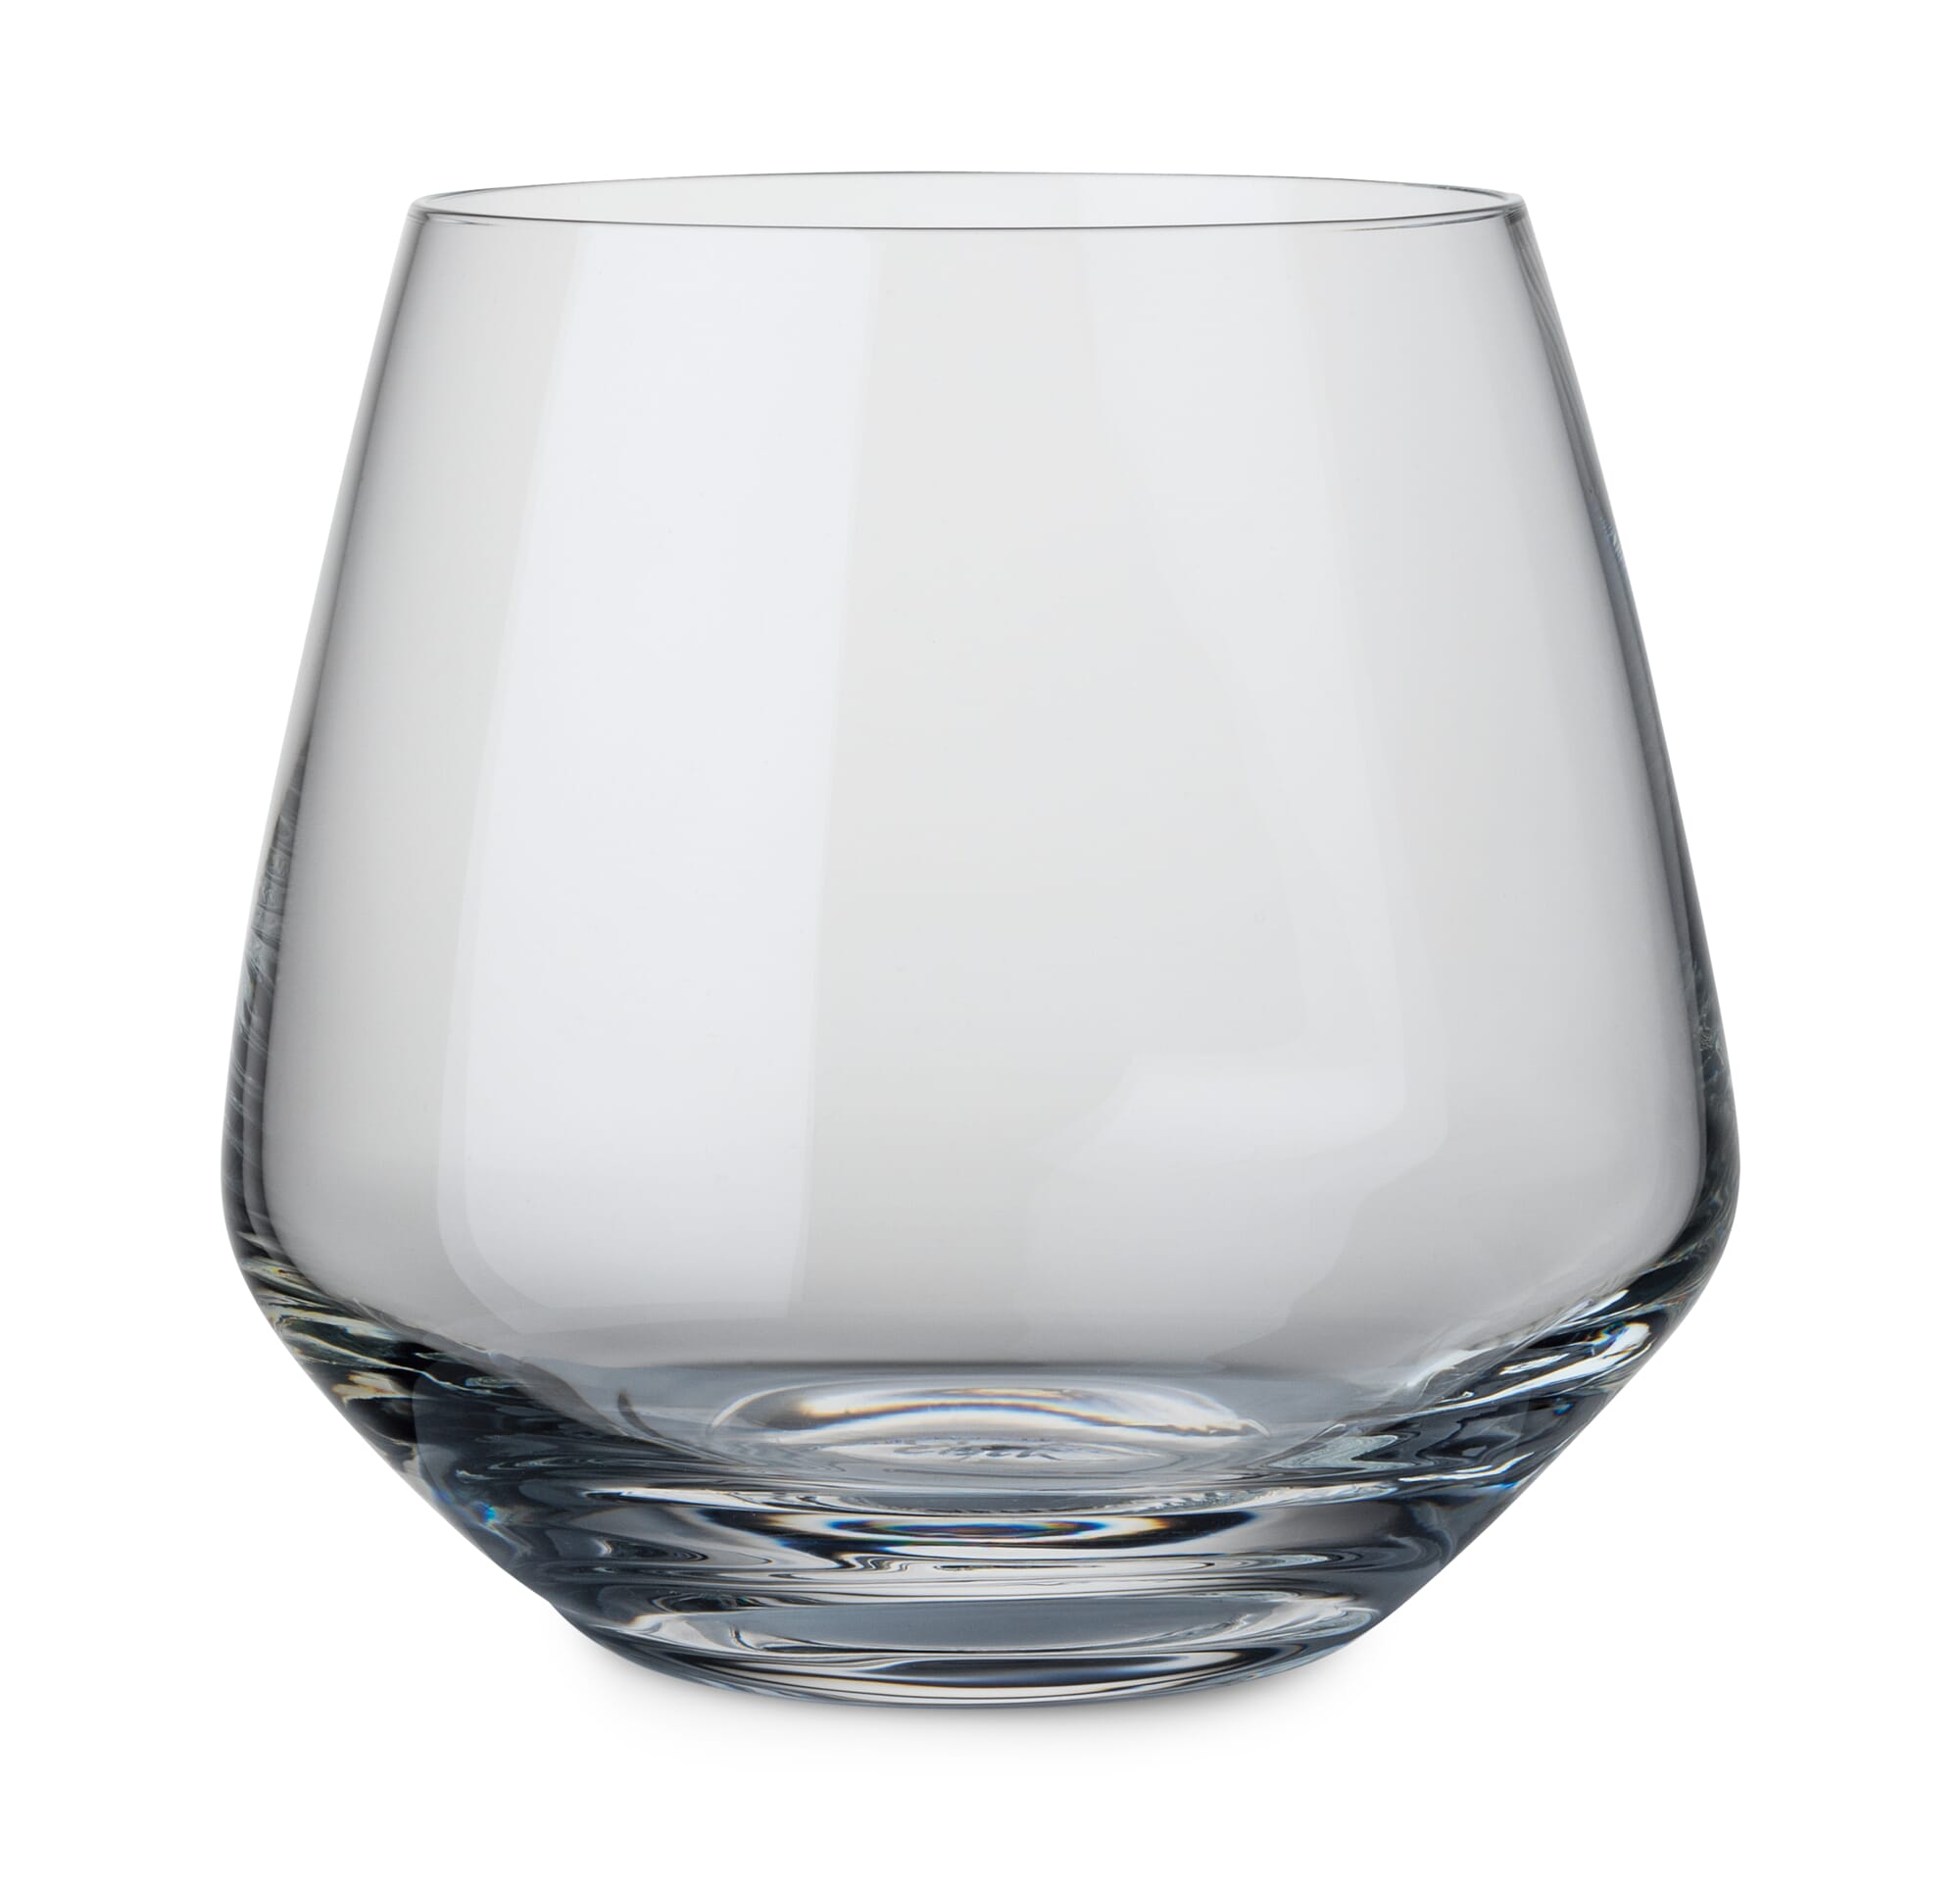 H.~ 10cm ~ 660g pro Glas ~ Vintage 2 Stück Whisky Gläser Serie Nordic Eisch 